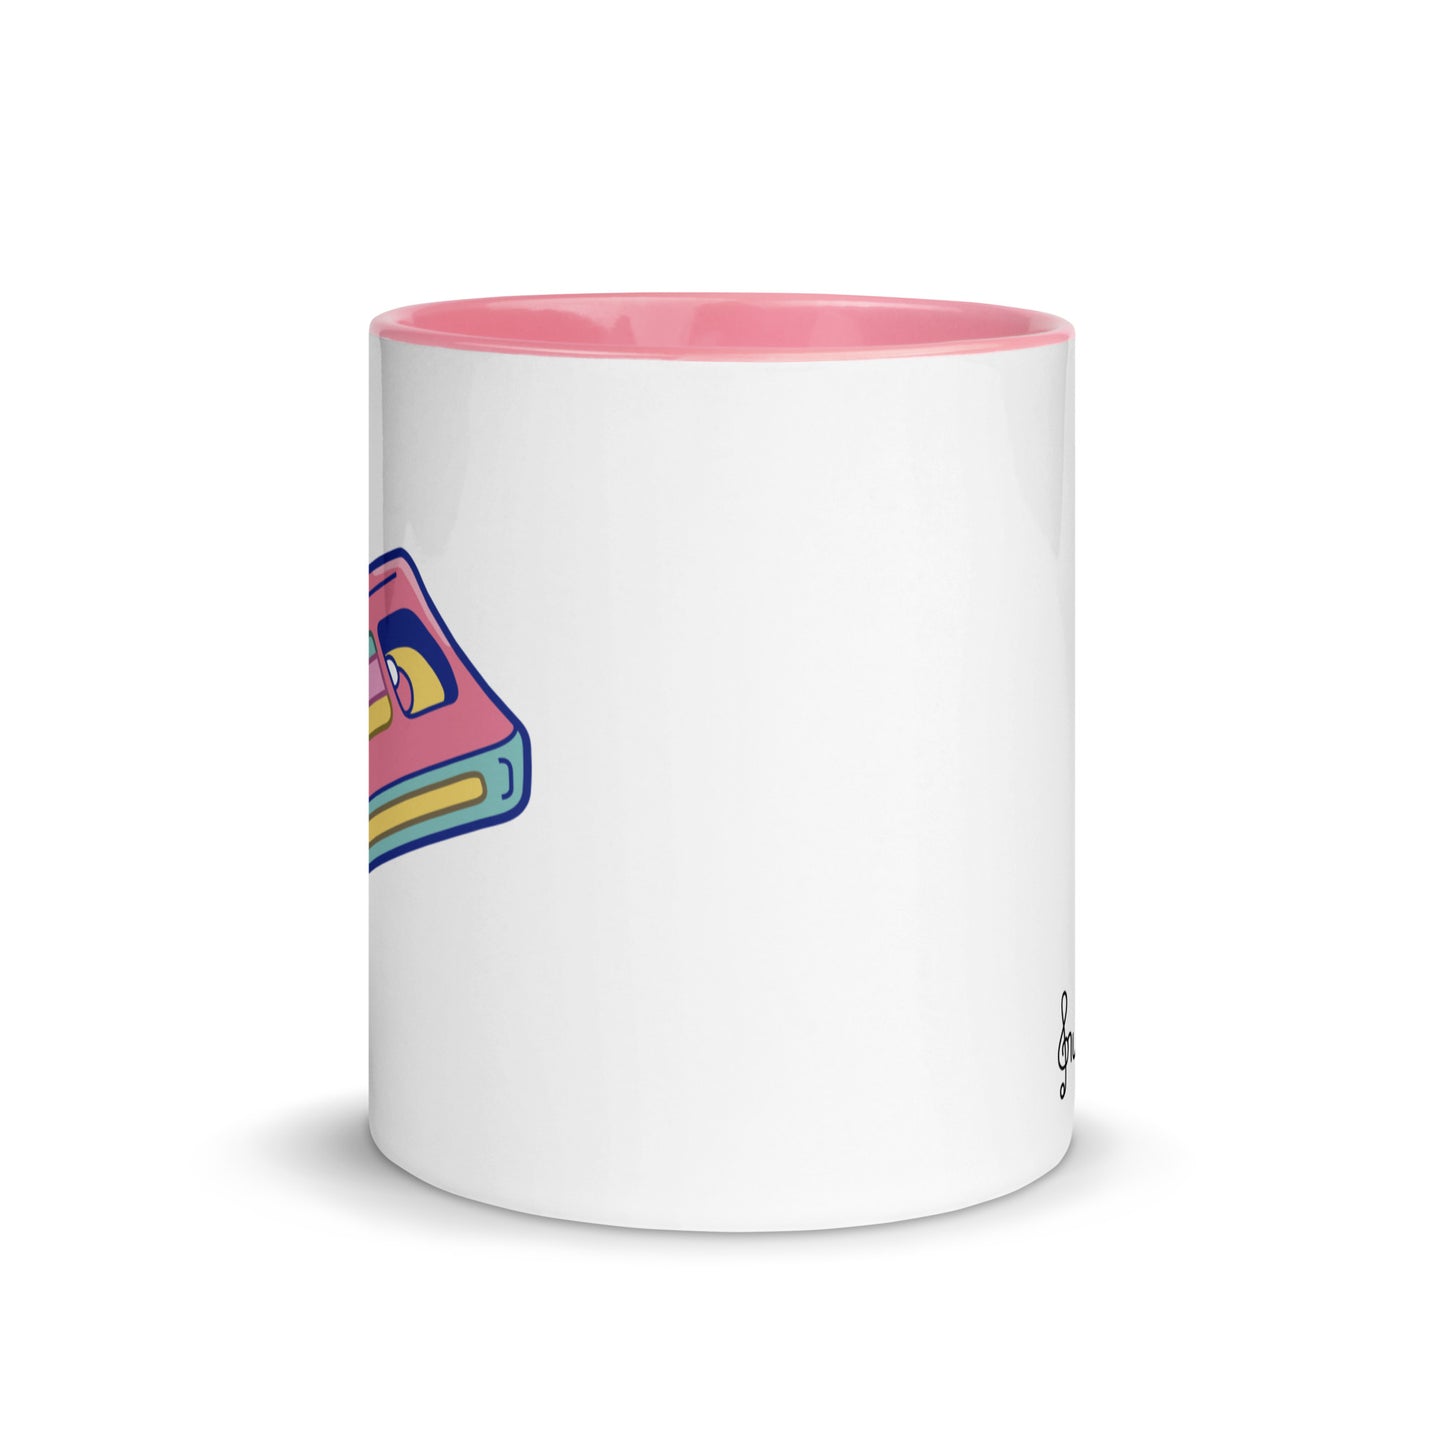 Pink Cassette Mug